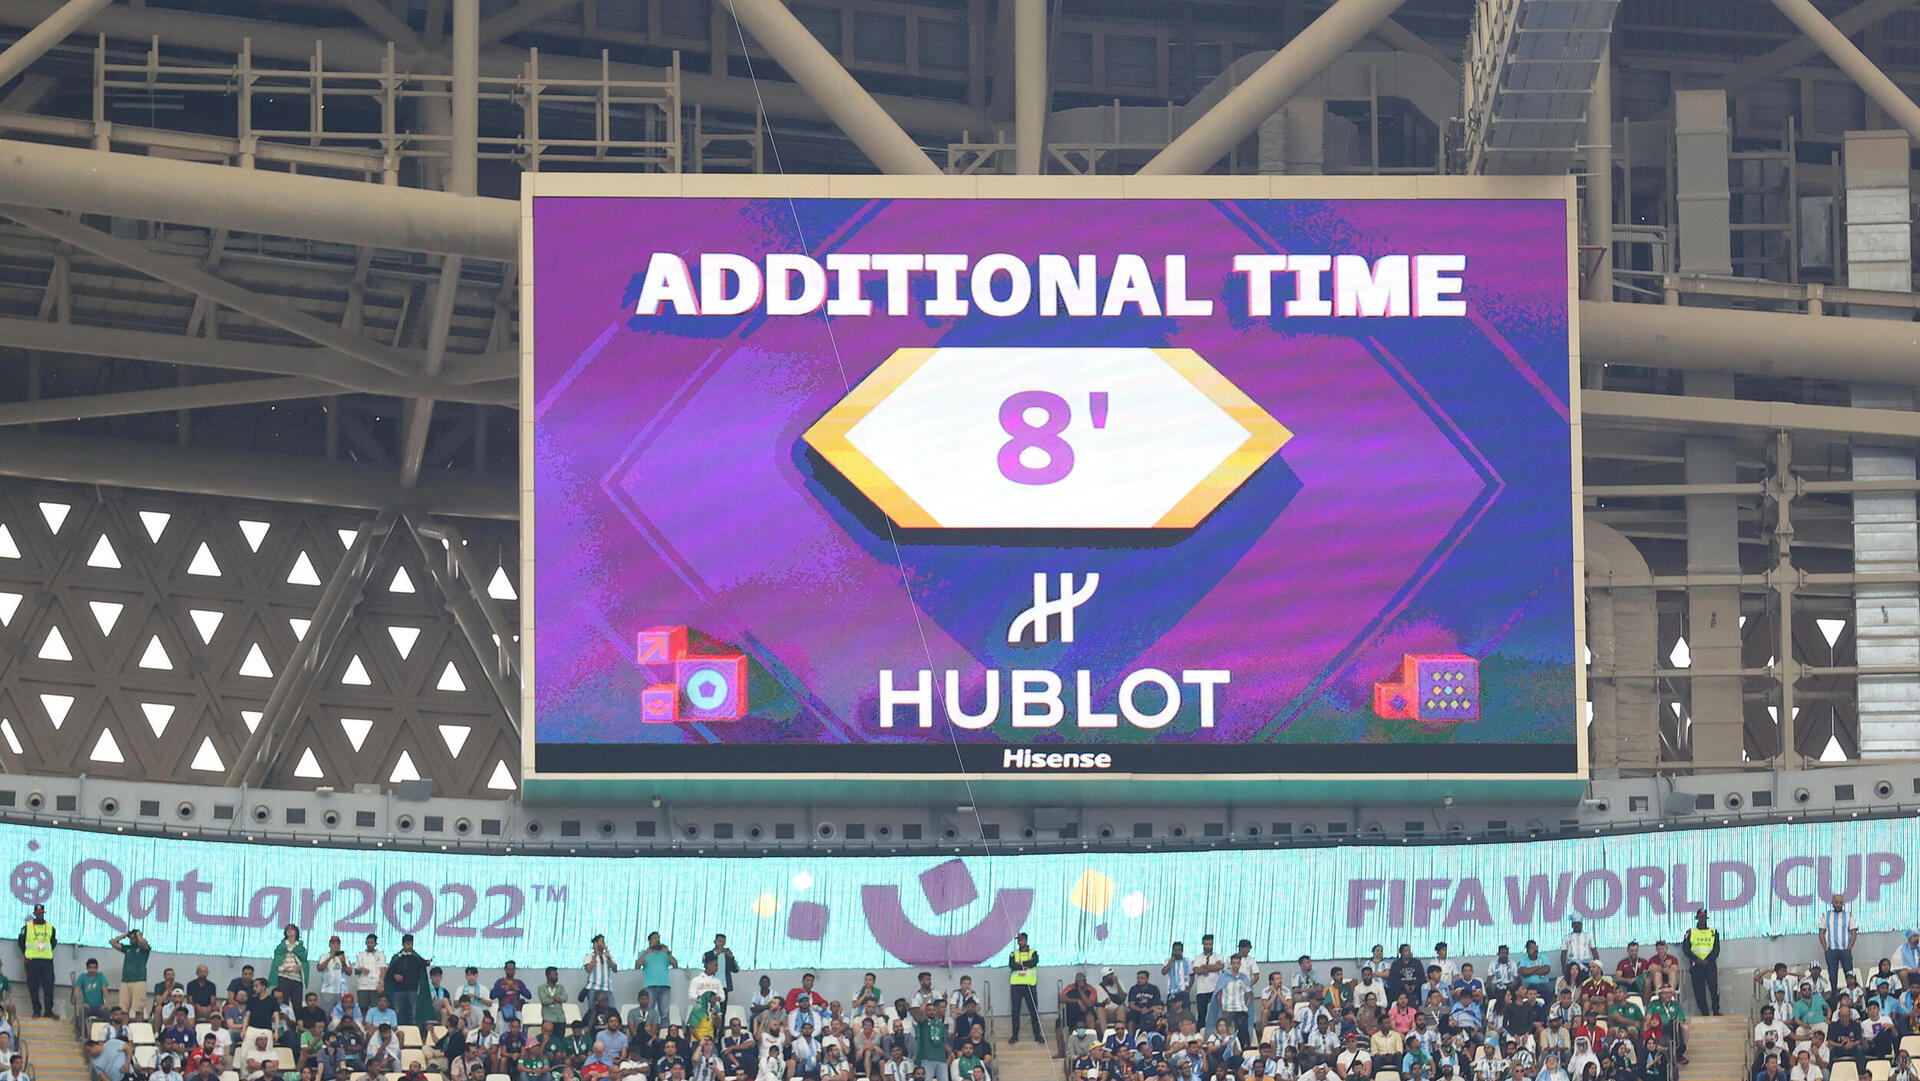 תוספת זמן במשחק בין ארגנטינה ל סעודיה מונדיאל קטאר 2022